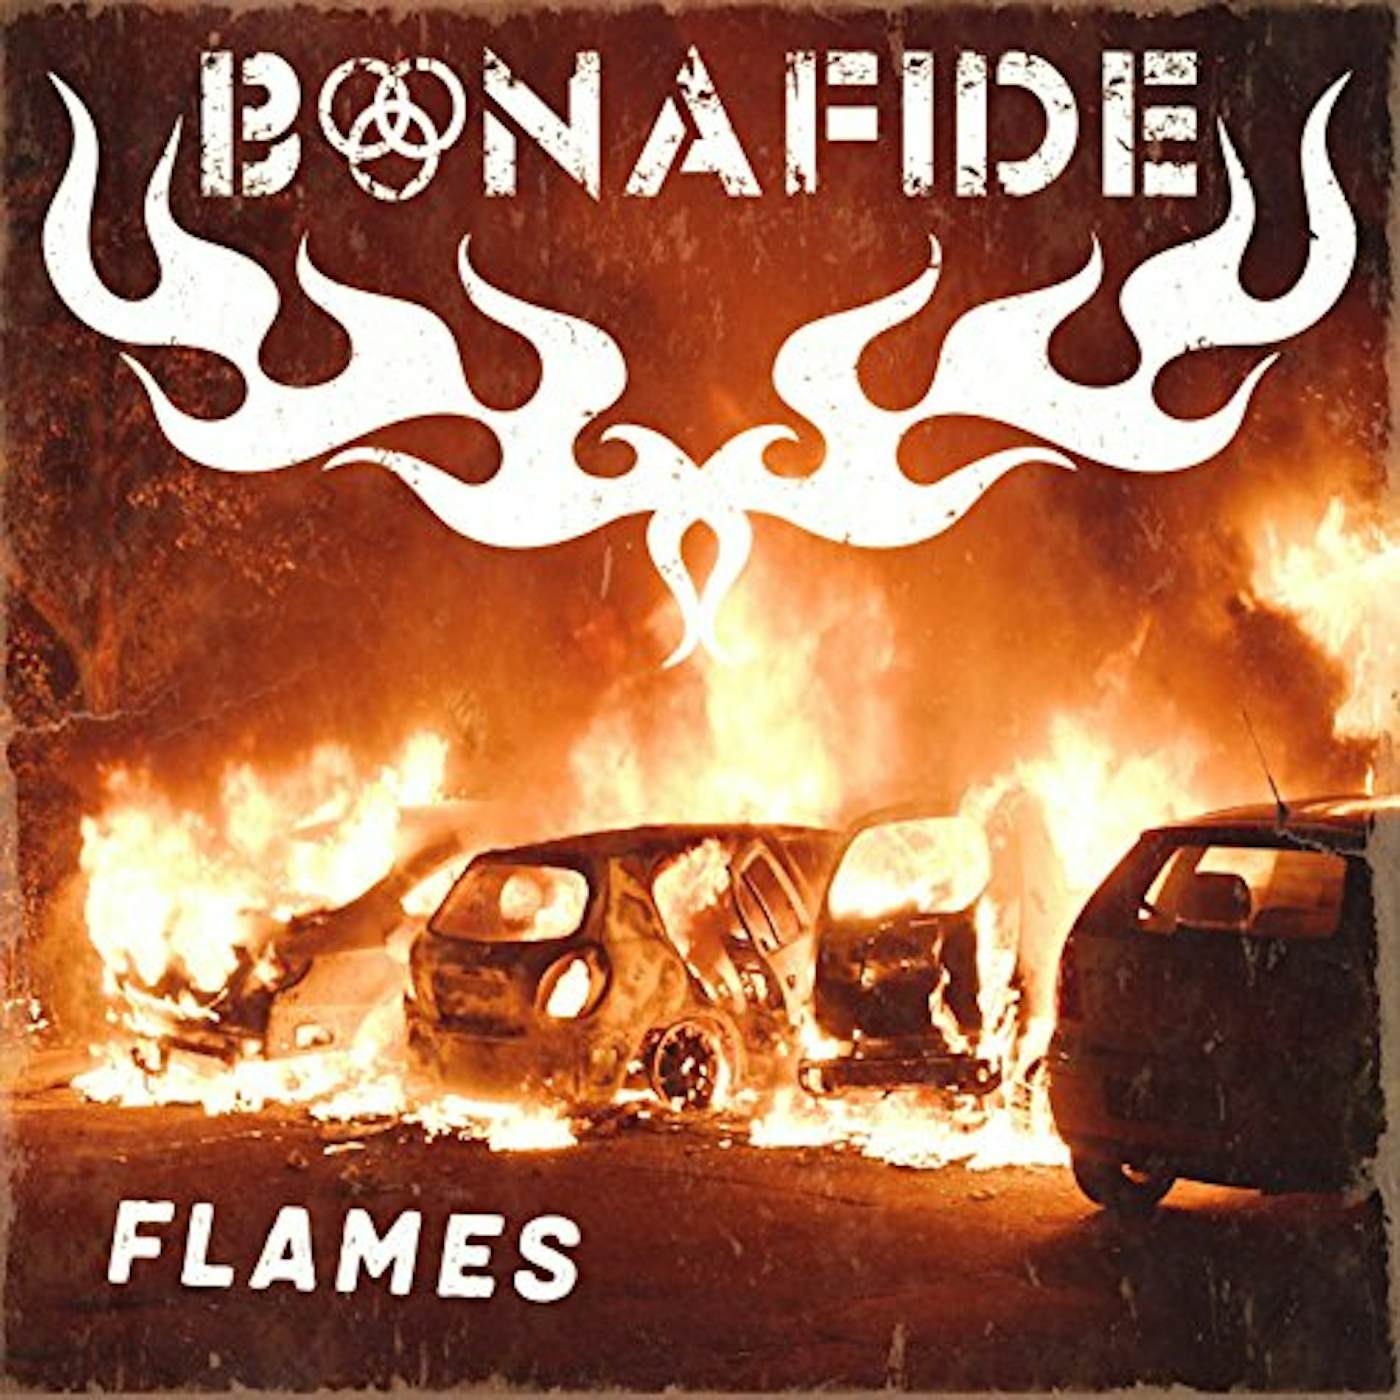 Bonafide Flames Vinyl Record